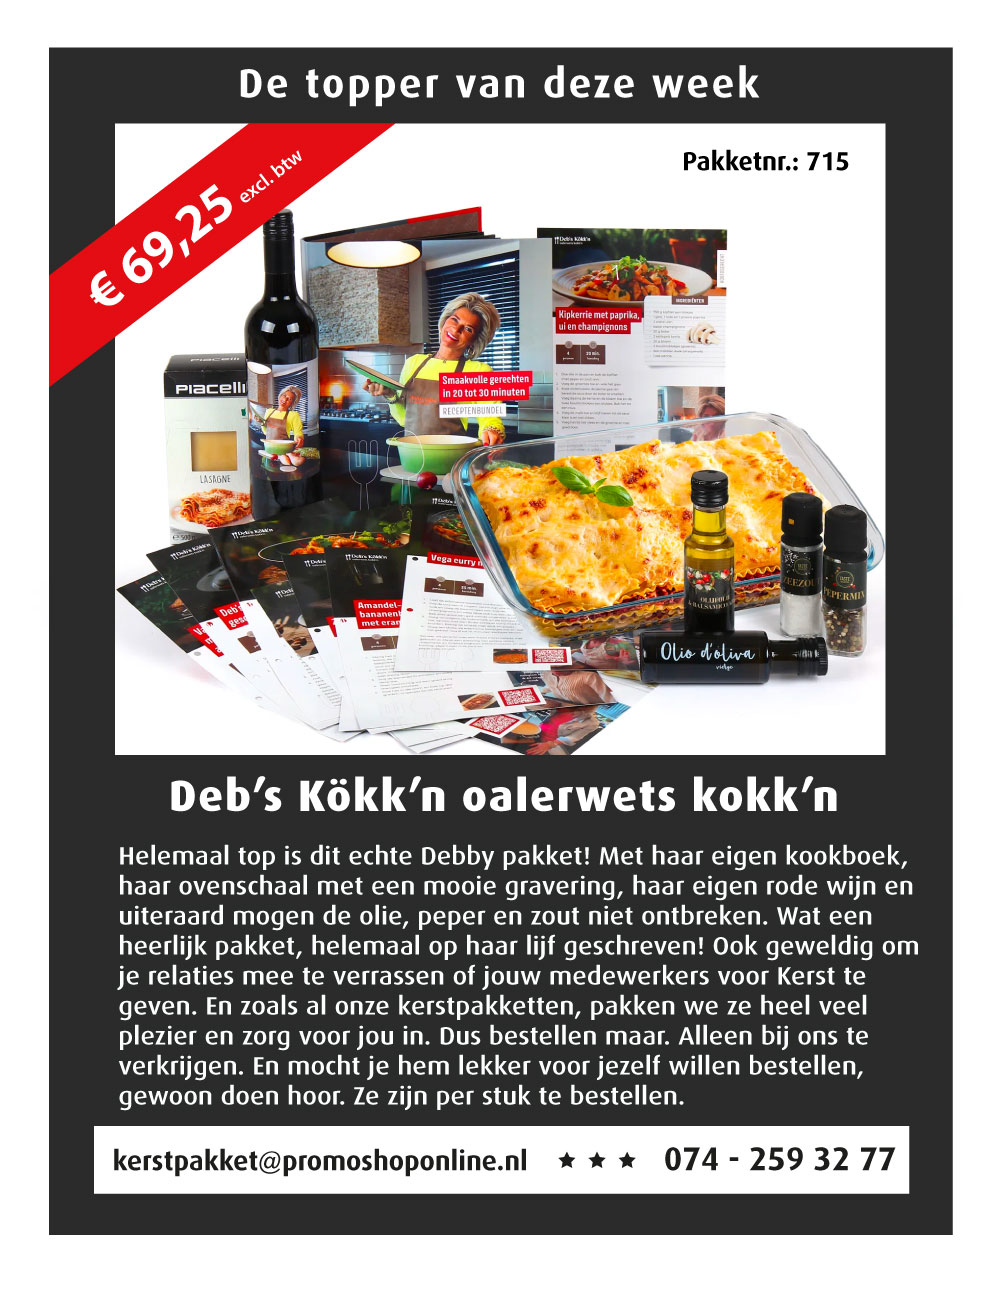 https://uwkerstpakket.nl/p/debs-kokkn-oalerwets-kokkn/